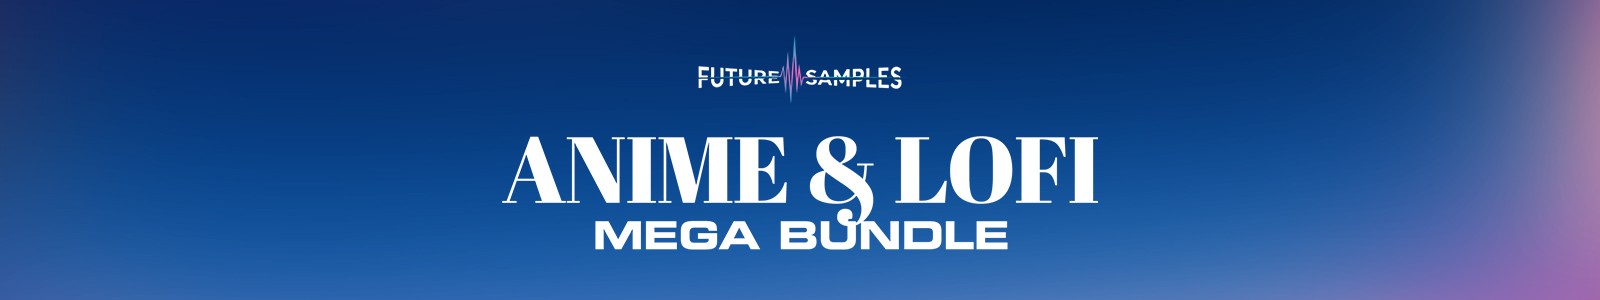 Future Samples Anime & Lofi Mega Bundle